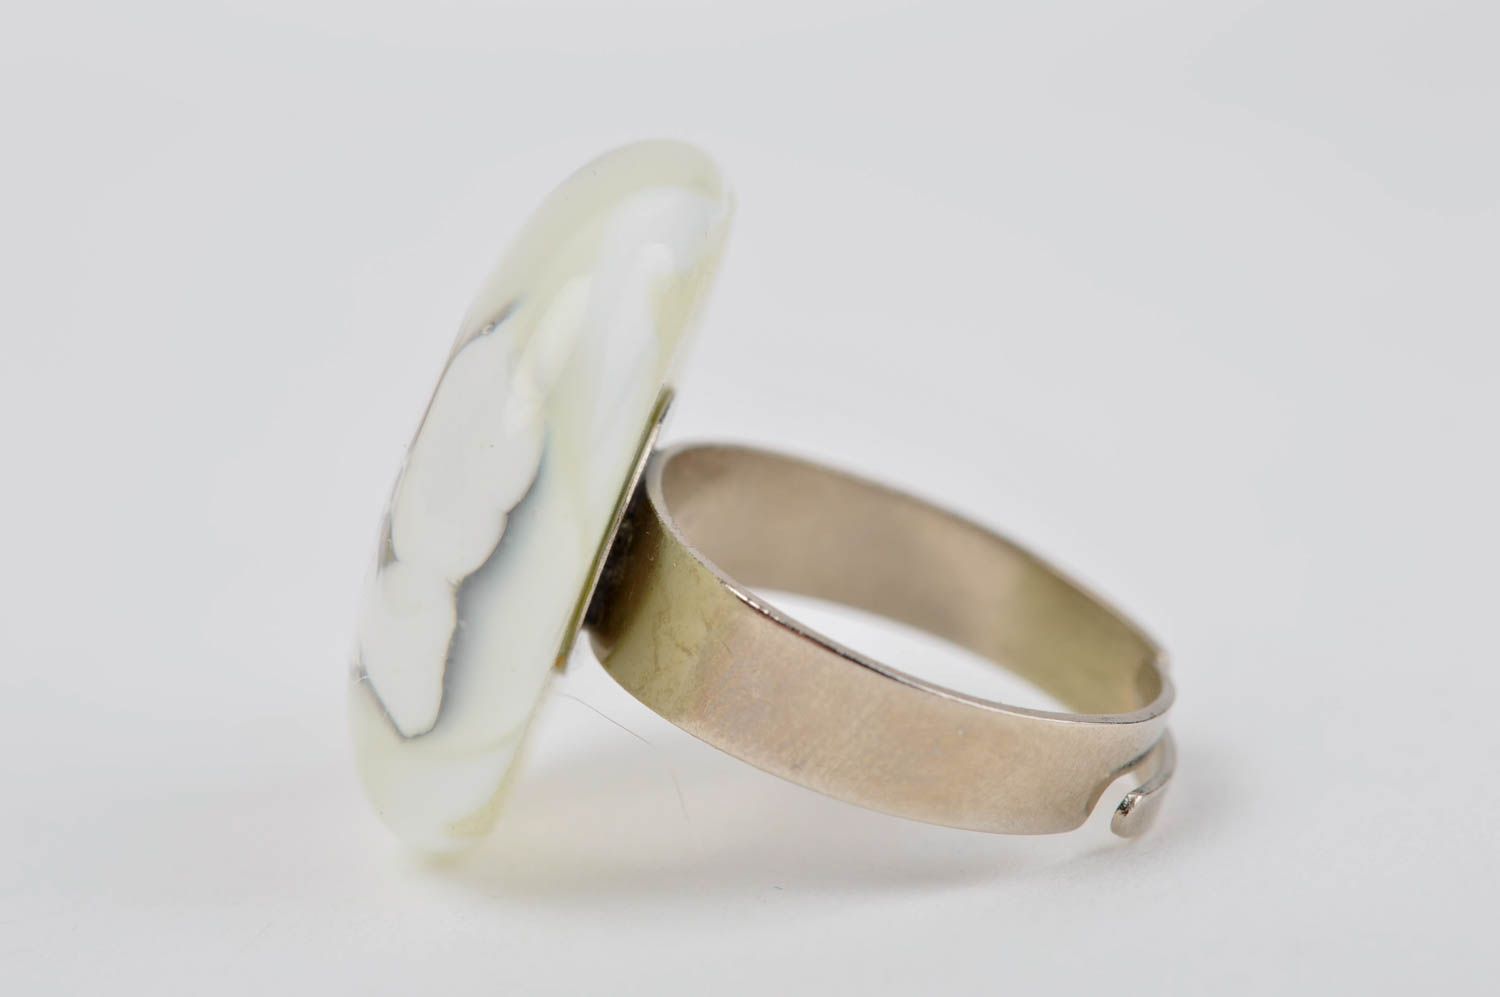 Stylish handmade glass ring accessories for girls handmade jewellery glass art photo 5